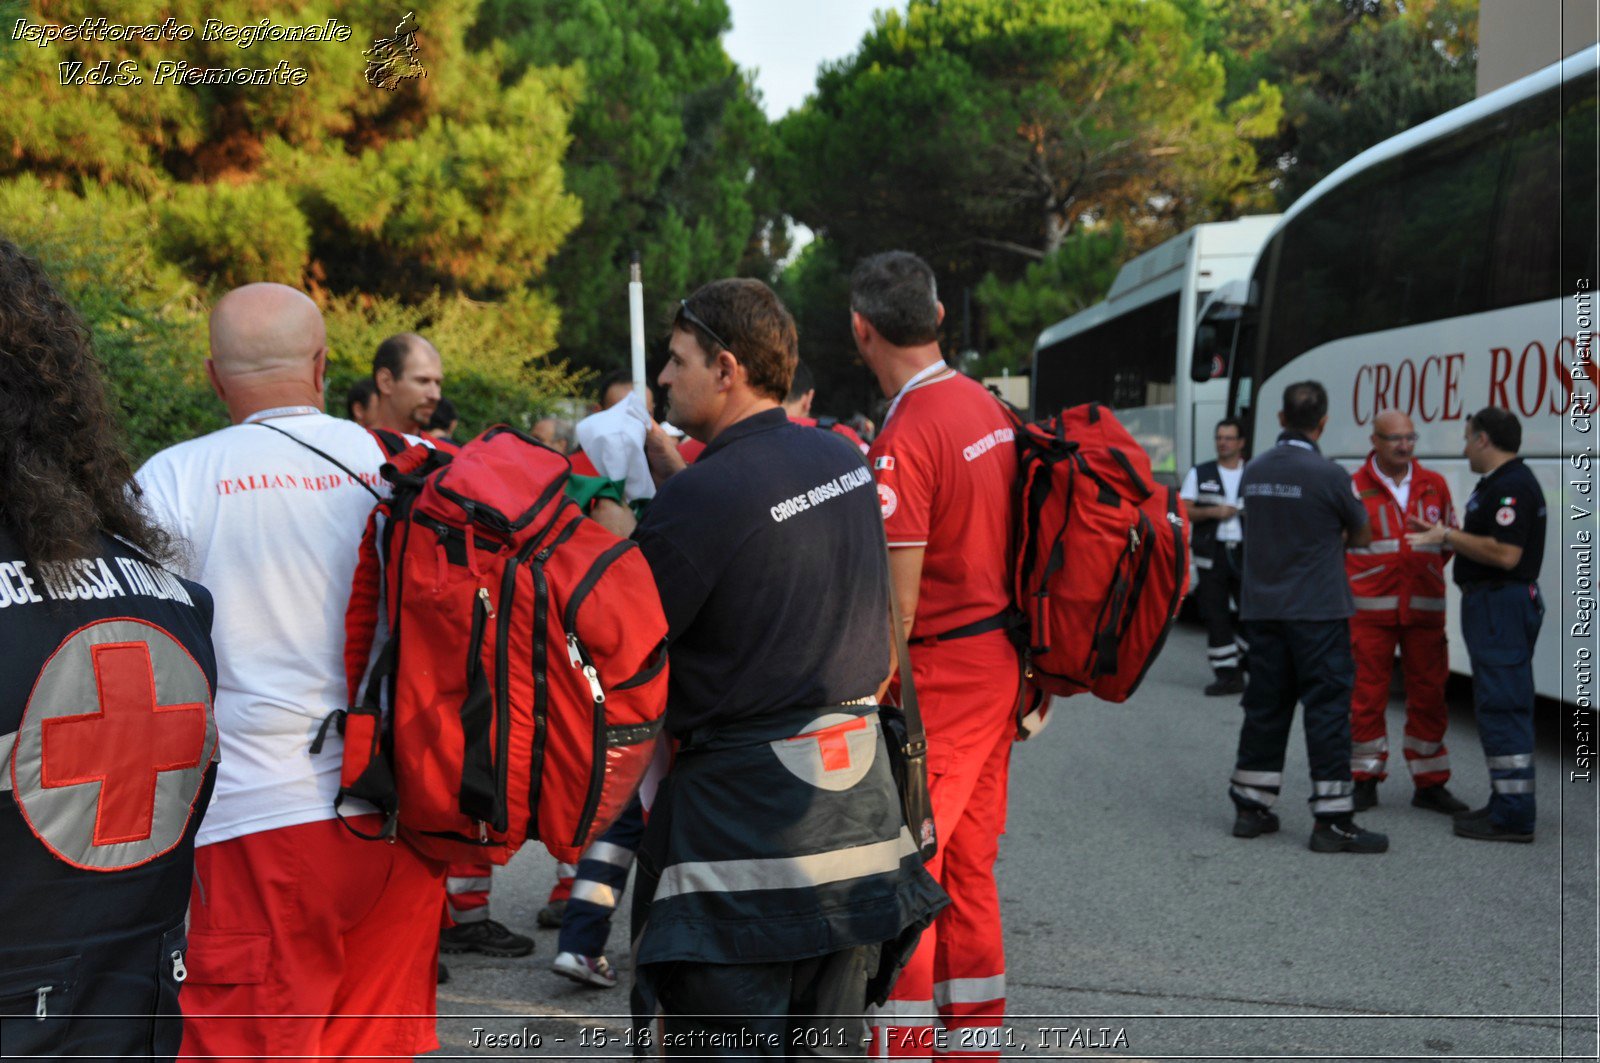 Jesolo - 15-18 settembre 2011 - FACE 2011, ITALIA -  Croce Rossa Italiana - Ispettorato Regionale Volontari del Soccorso Piemonte